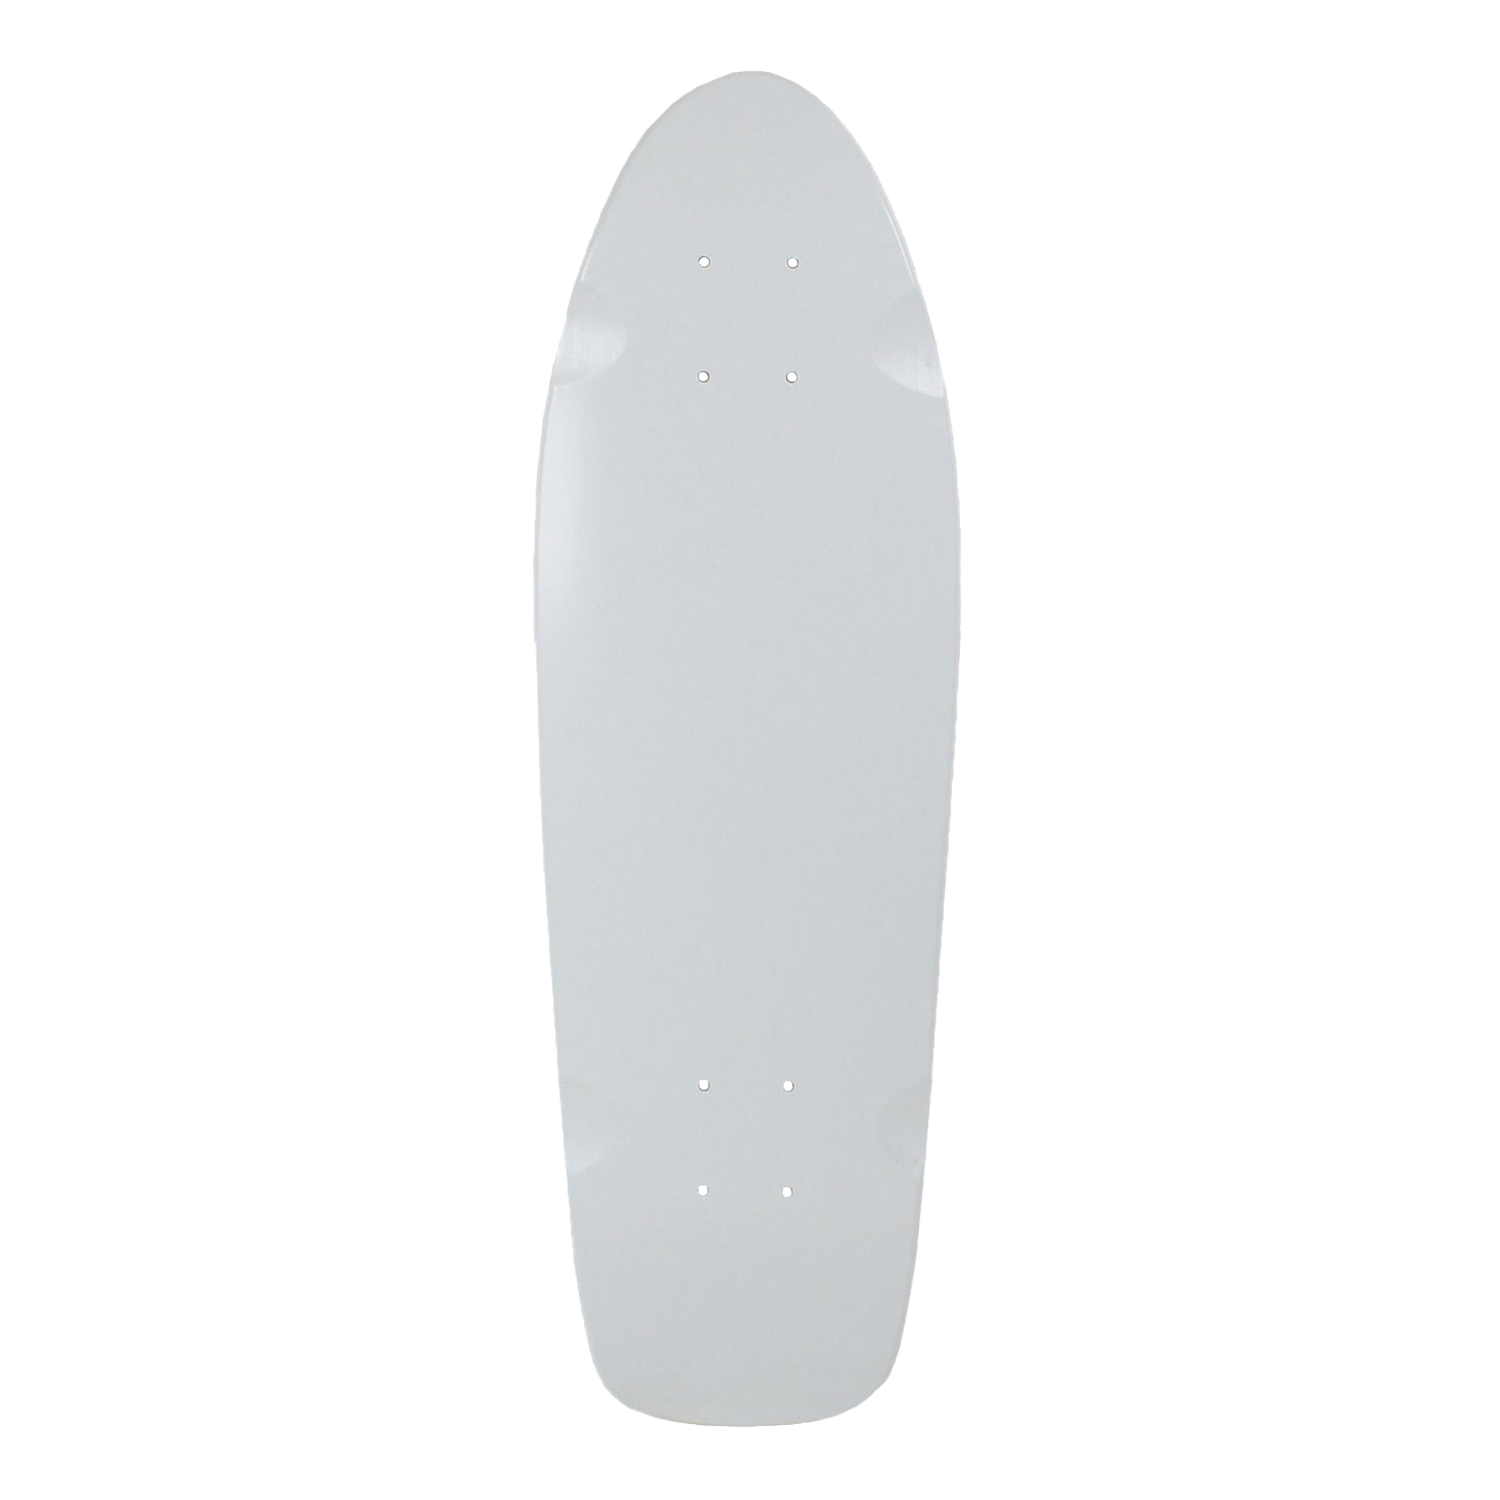 Moose Skateboard Cruiser Deck White 8" x 26.5" BRAND NEW IN SHRINK 